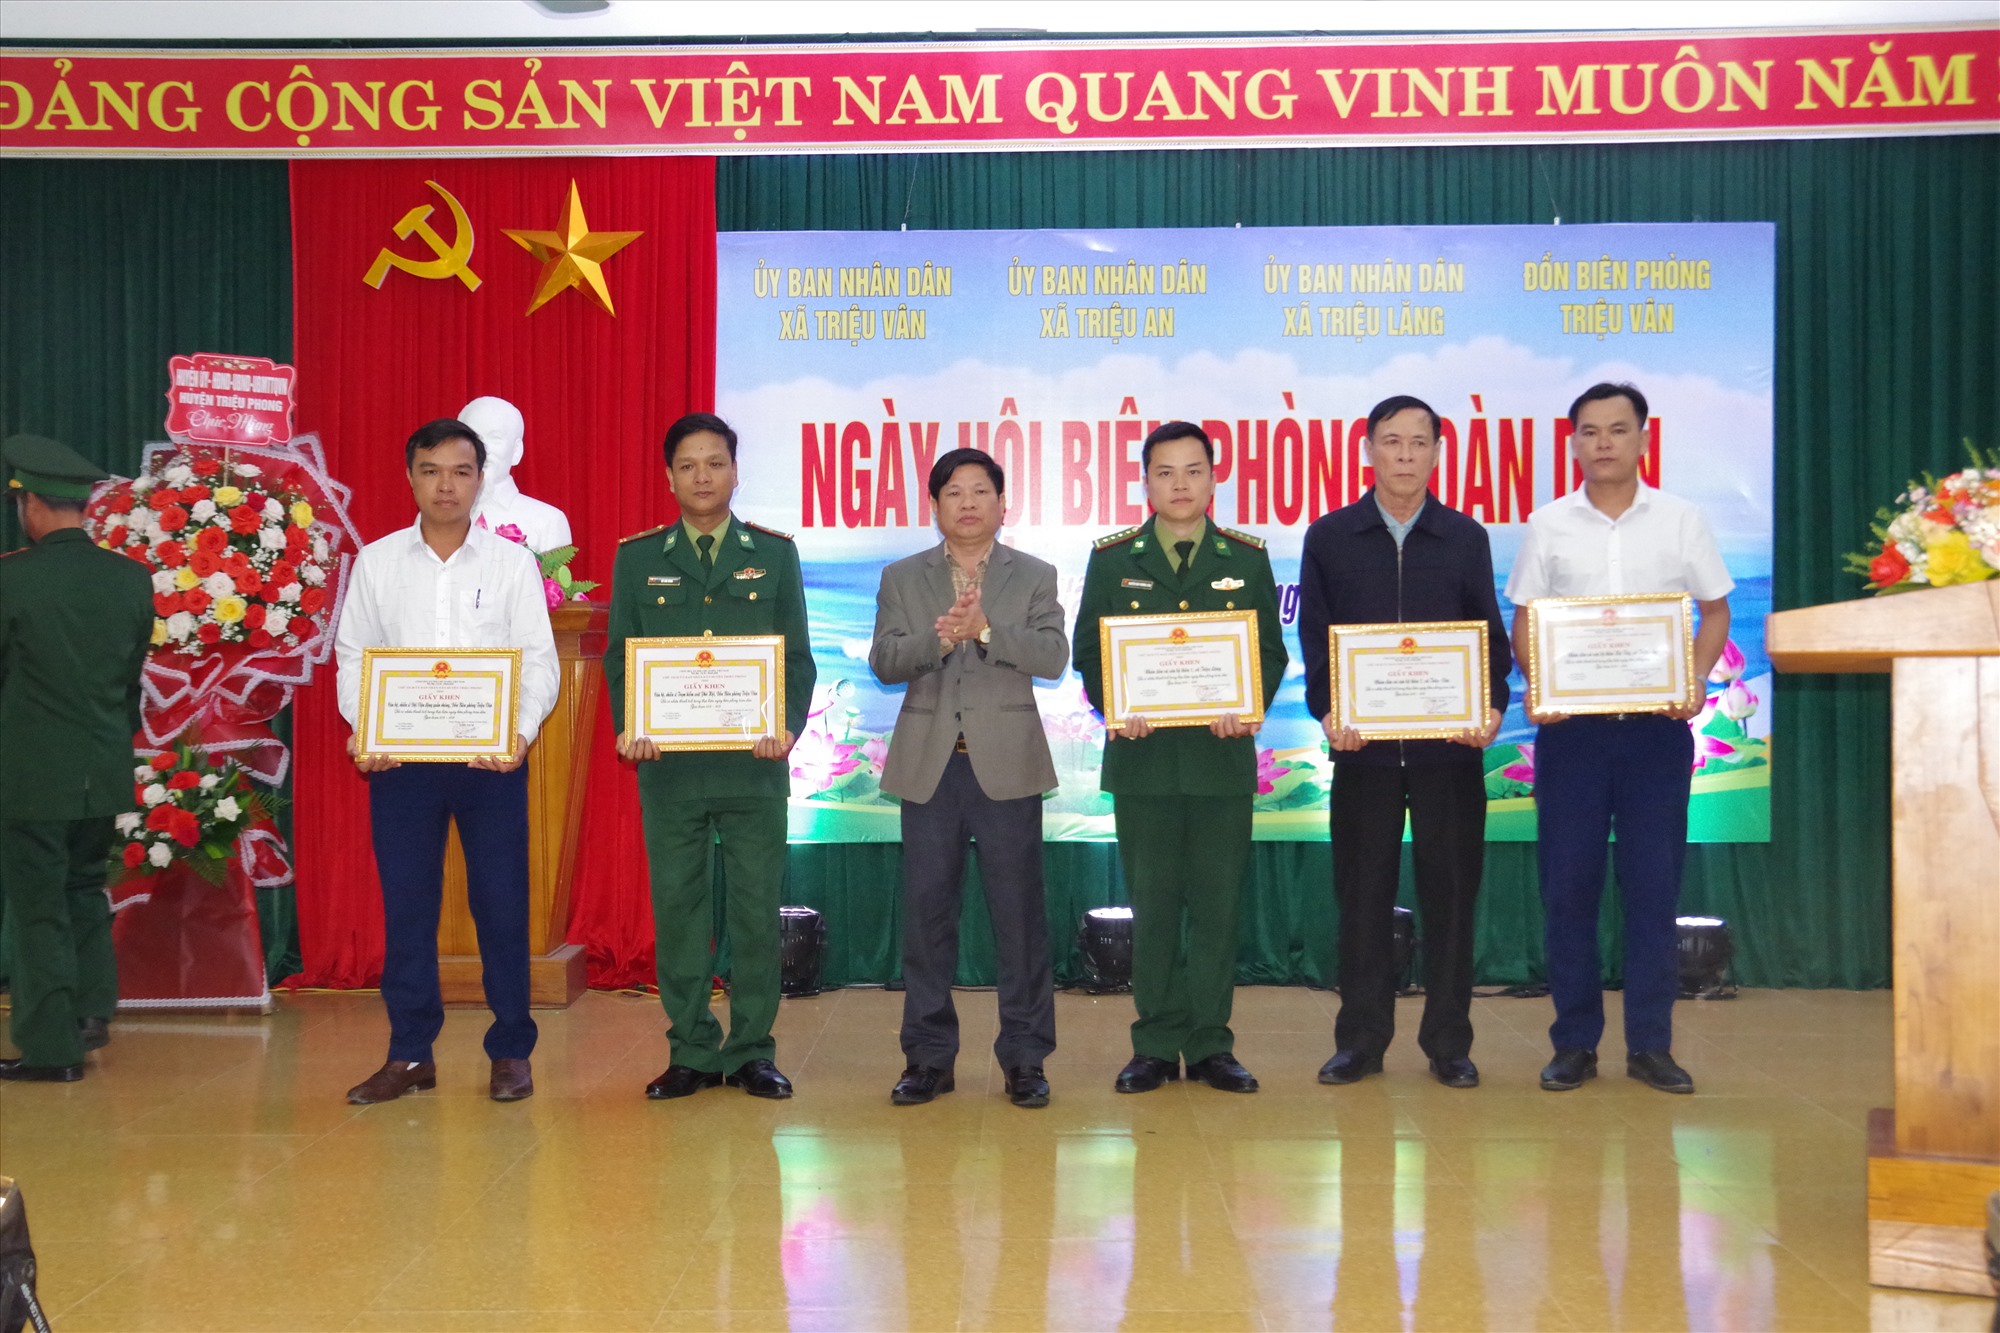 Đồng chí Phan Văn Linh, Phó Bí thư Huyện ủy, Chủ tịch UBND huyện trao Giấy khen của UBND huyện cho các tập thể và cá nhân có thành tích tiêu biểu trong thực hiện Ngày Biên phòng toàn dân, giai đoạn 2019-2024.